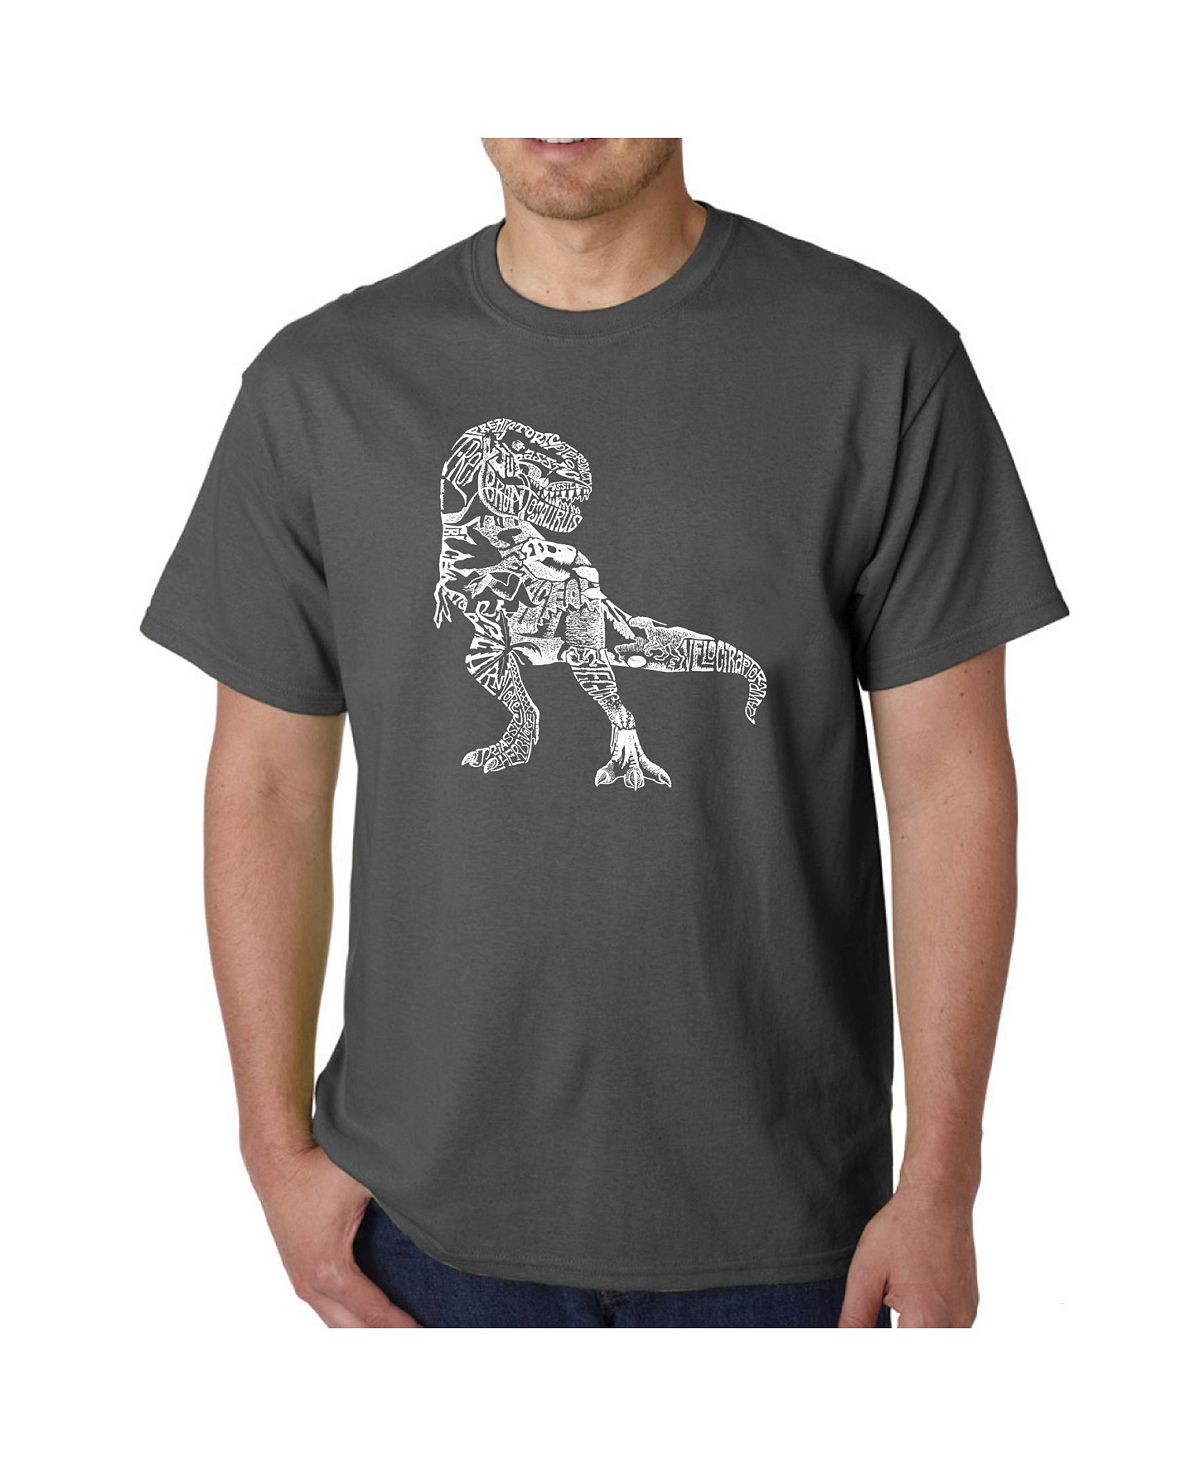 Мужская футболка word art - динозавр LA Pop Art, серый